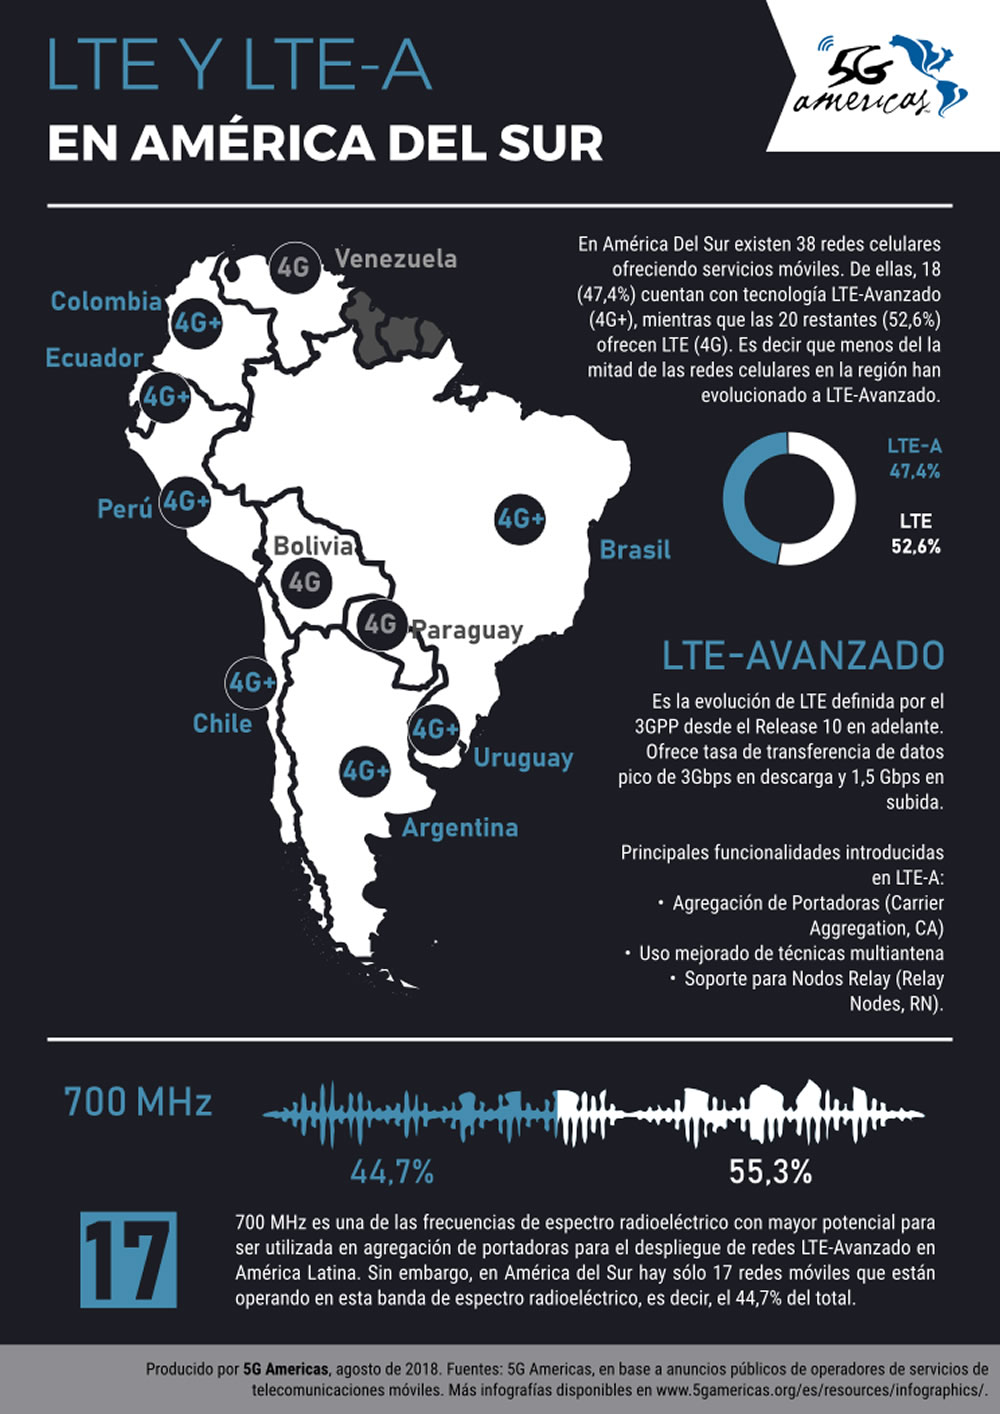 47,4% de las redes en Latinoamrica son LTE-Avanzado, informa 5G Amrica